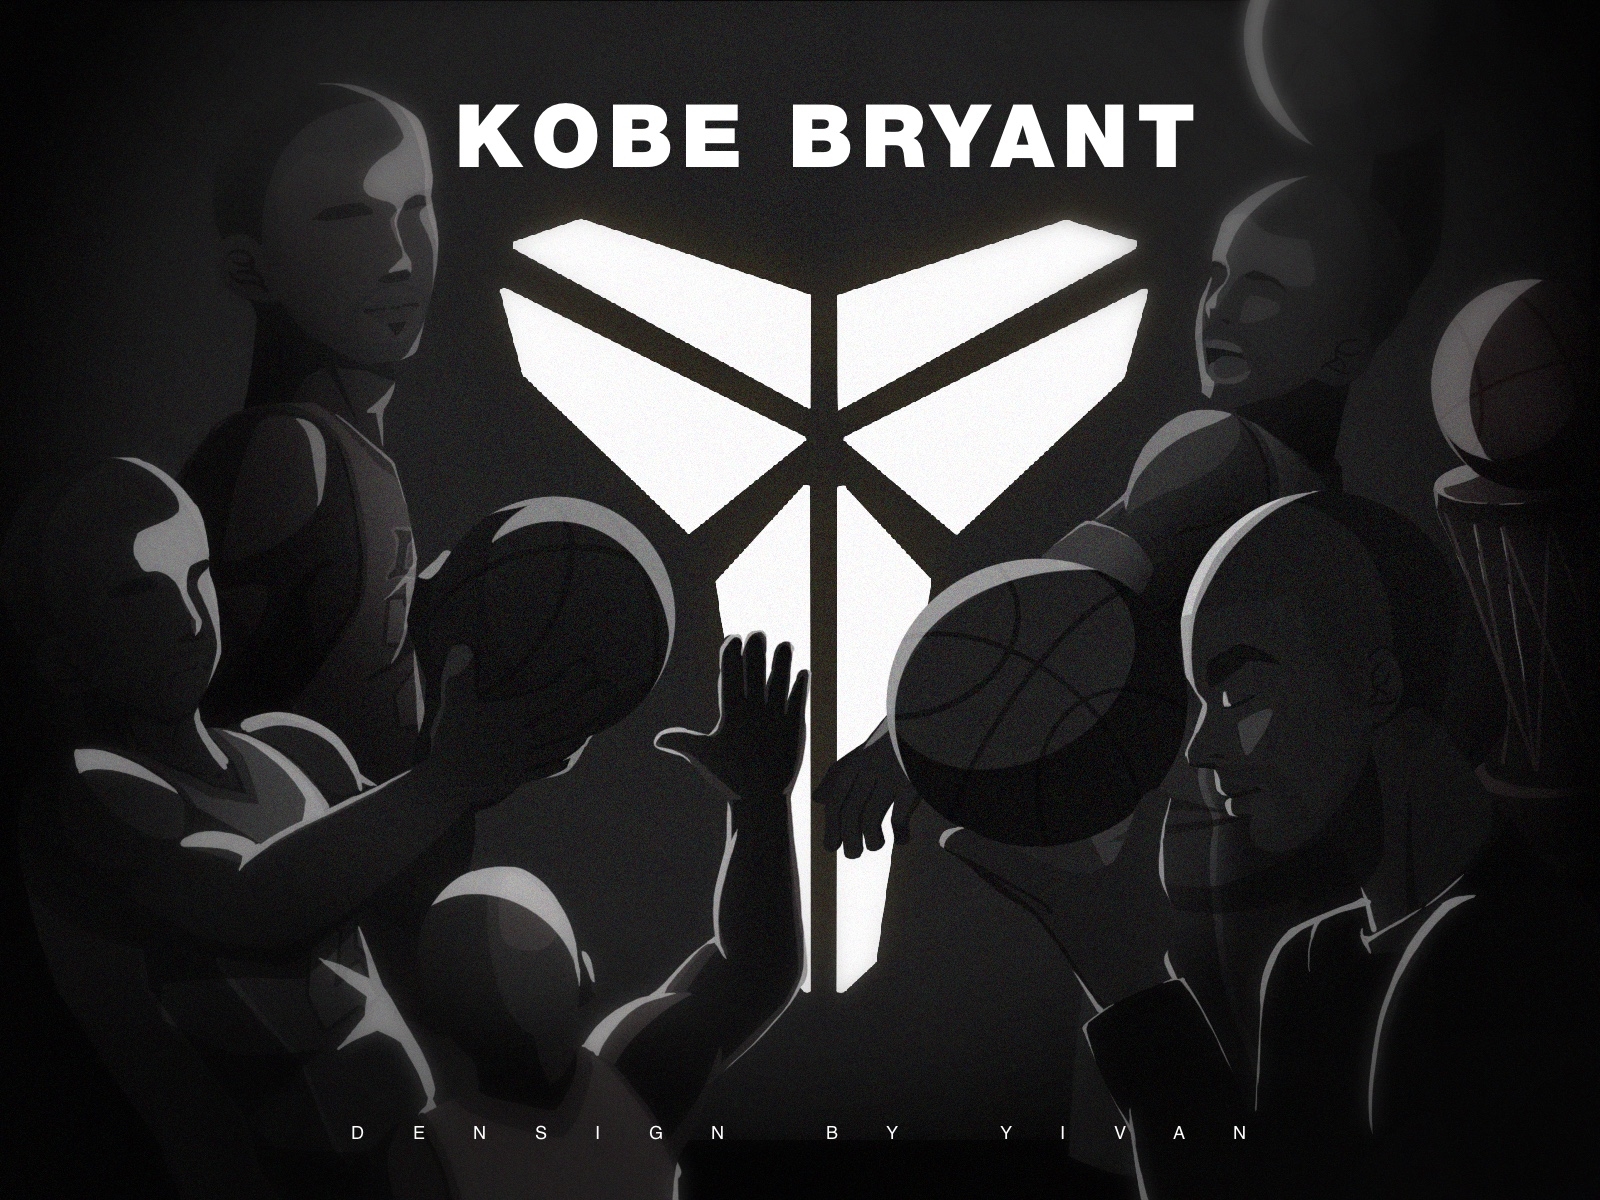 For Kobe Bryant black kobebryant basketball illustration